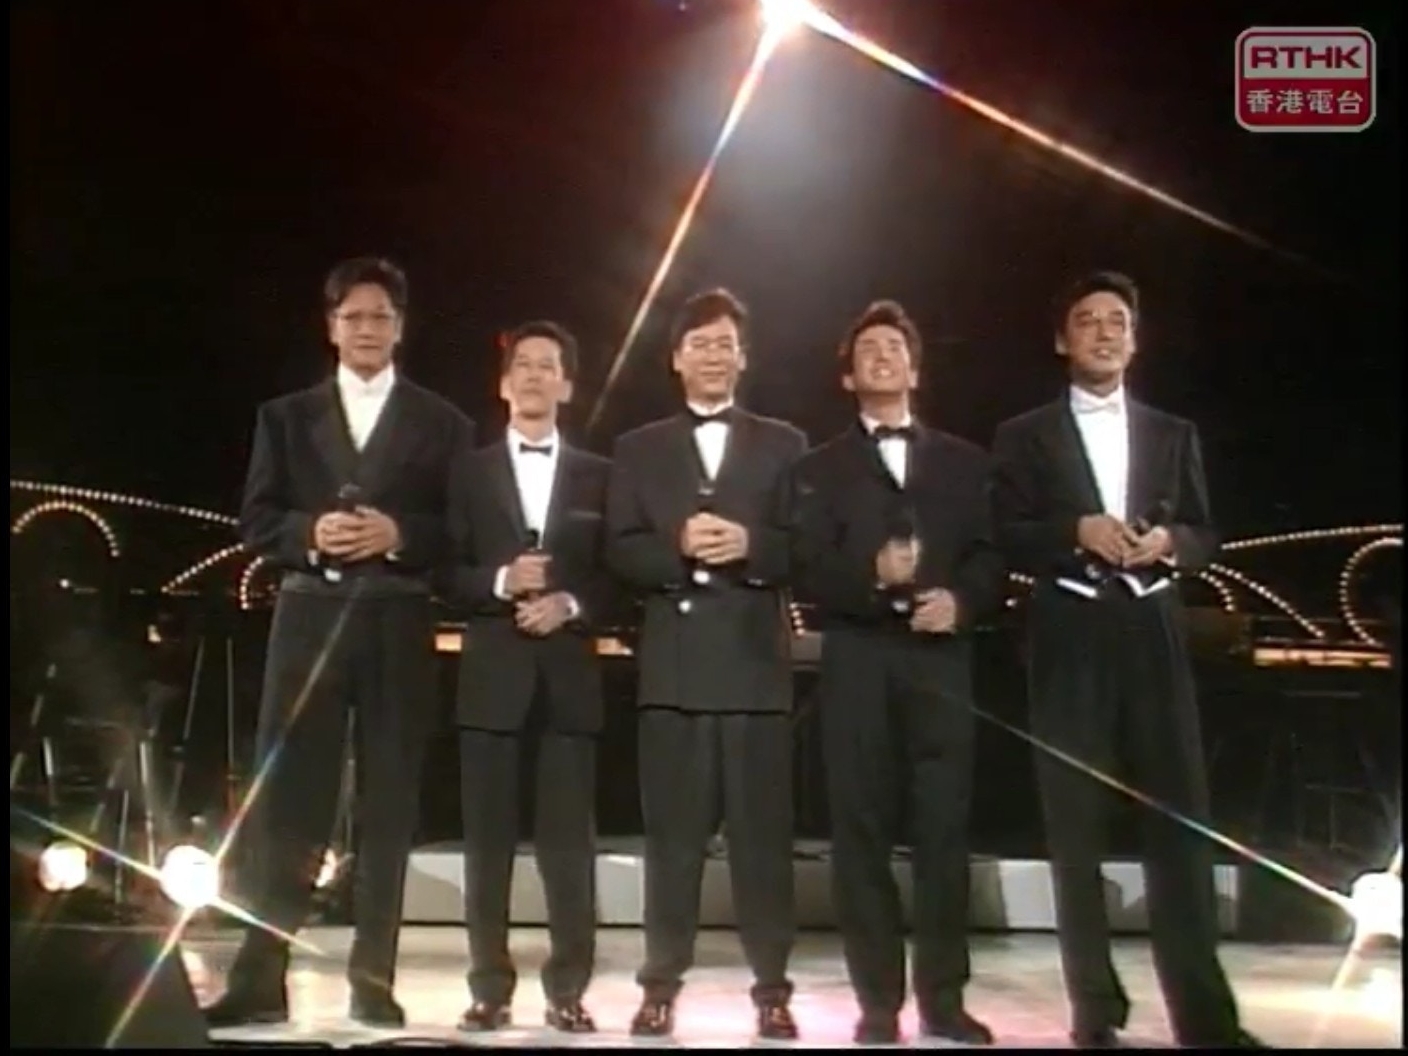 温拿乐队于1989年举行《第11届十大中文金曲》，凭《千载不变》夺“十大金曲奖”，当时陈友（左一）代表发言，称这座奖项于温拿而言是十分重要的纪念性礼物。左二起为叶智强、彭健新、谭咏麟以及锺镇涛。